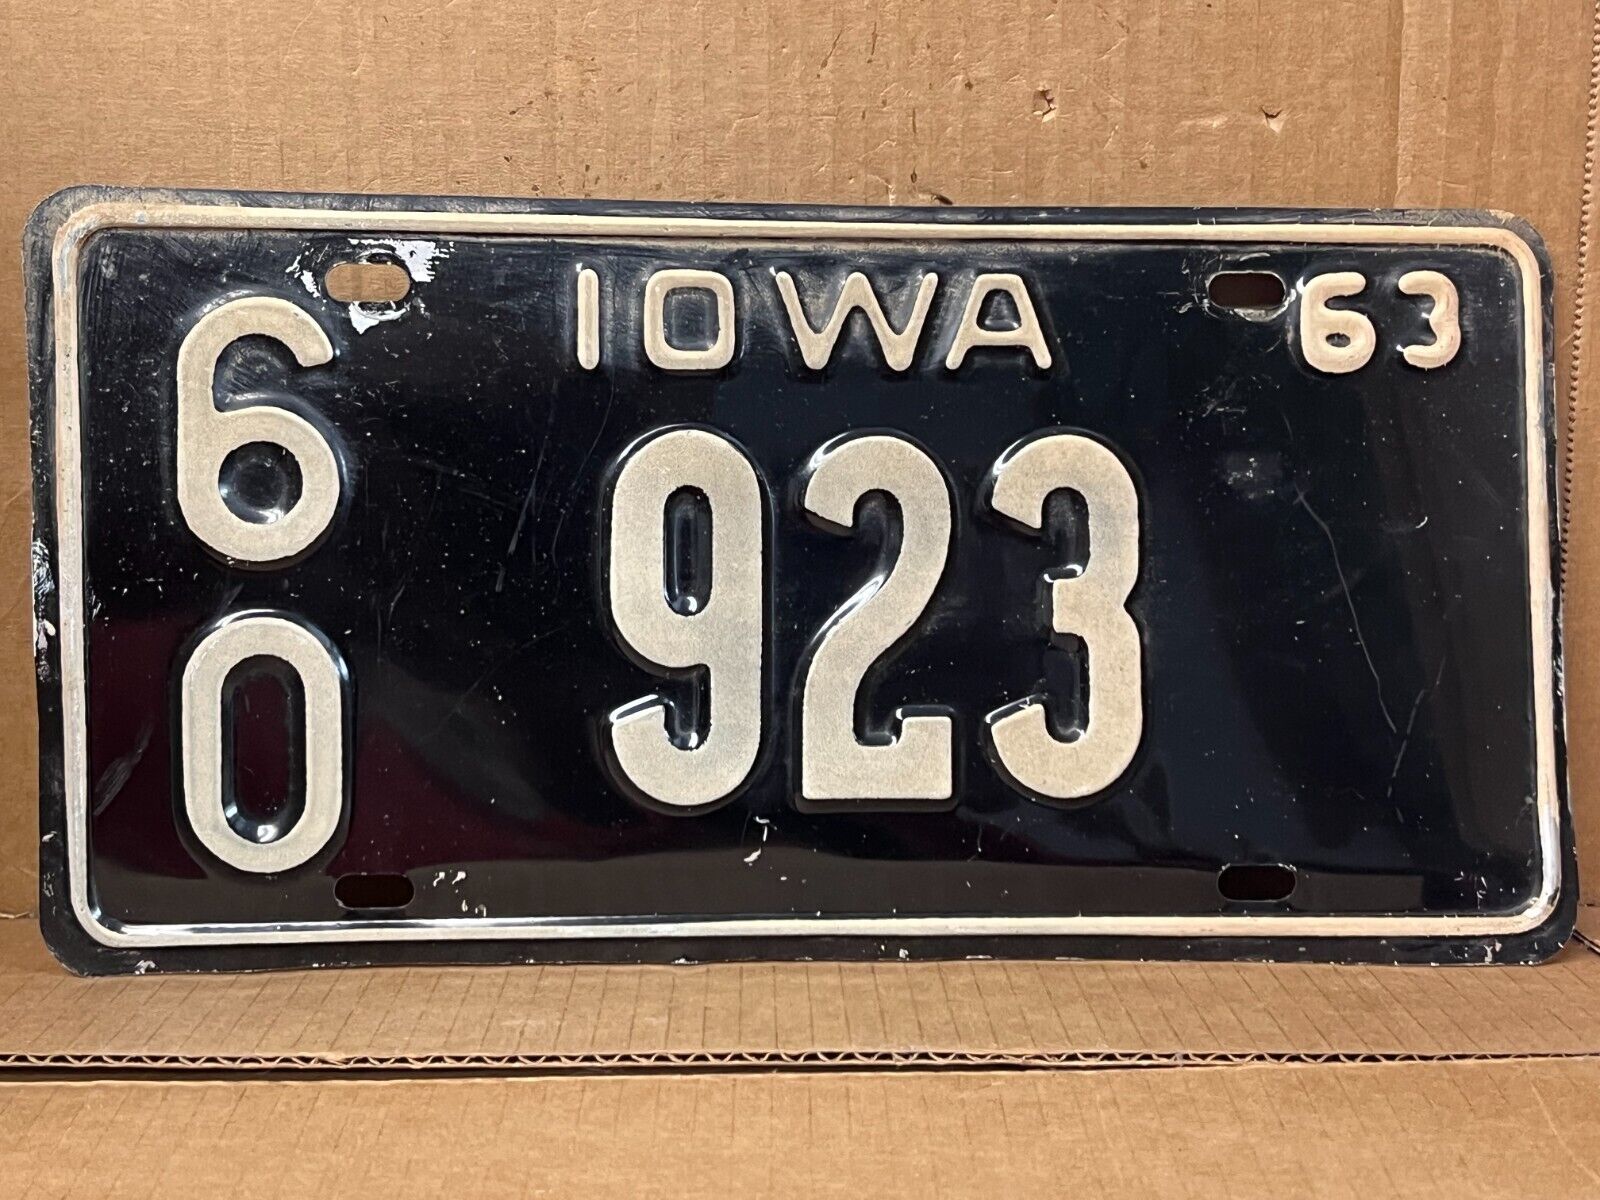 1963 Lyon county Iowa  license plate  60 923